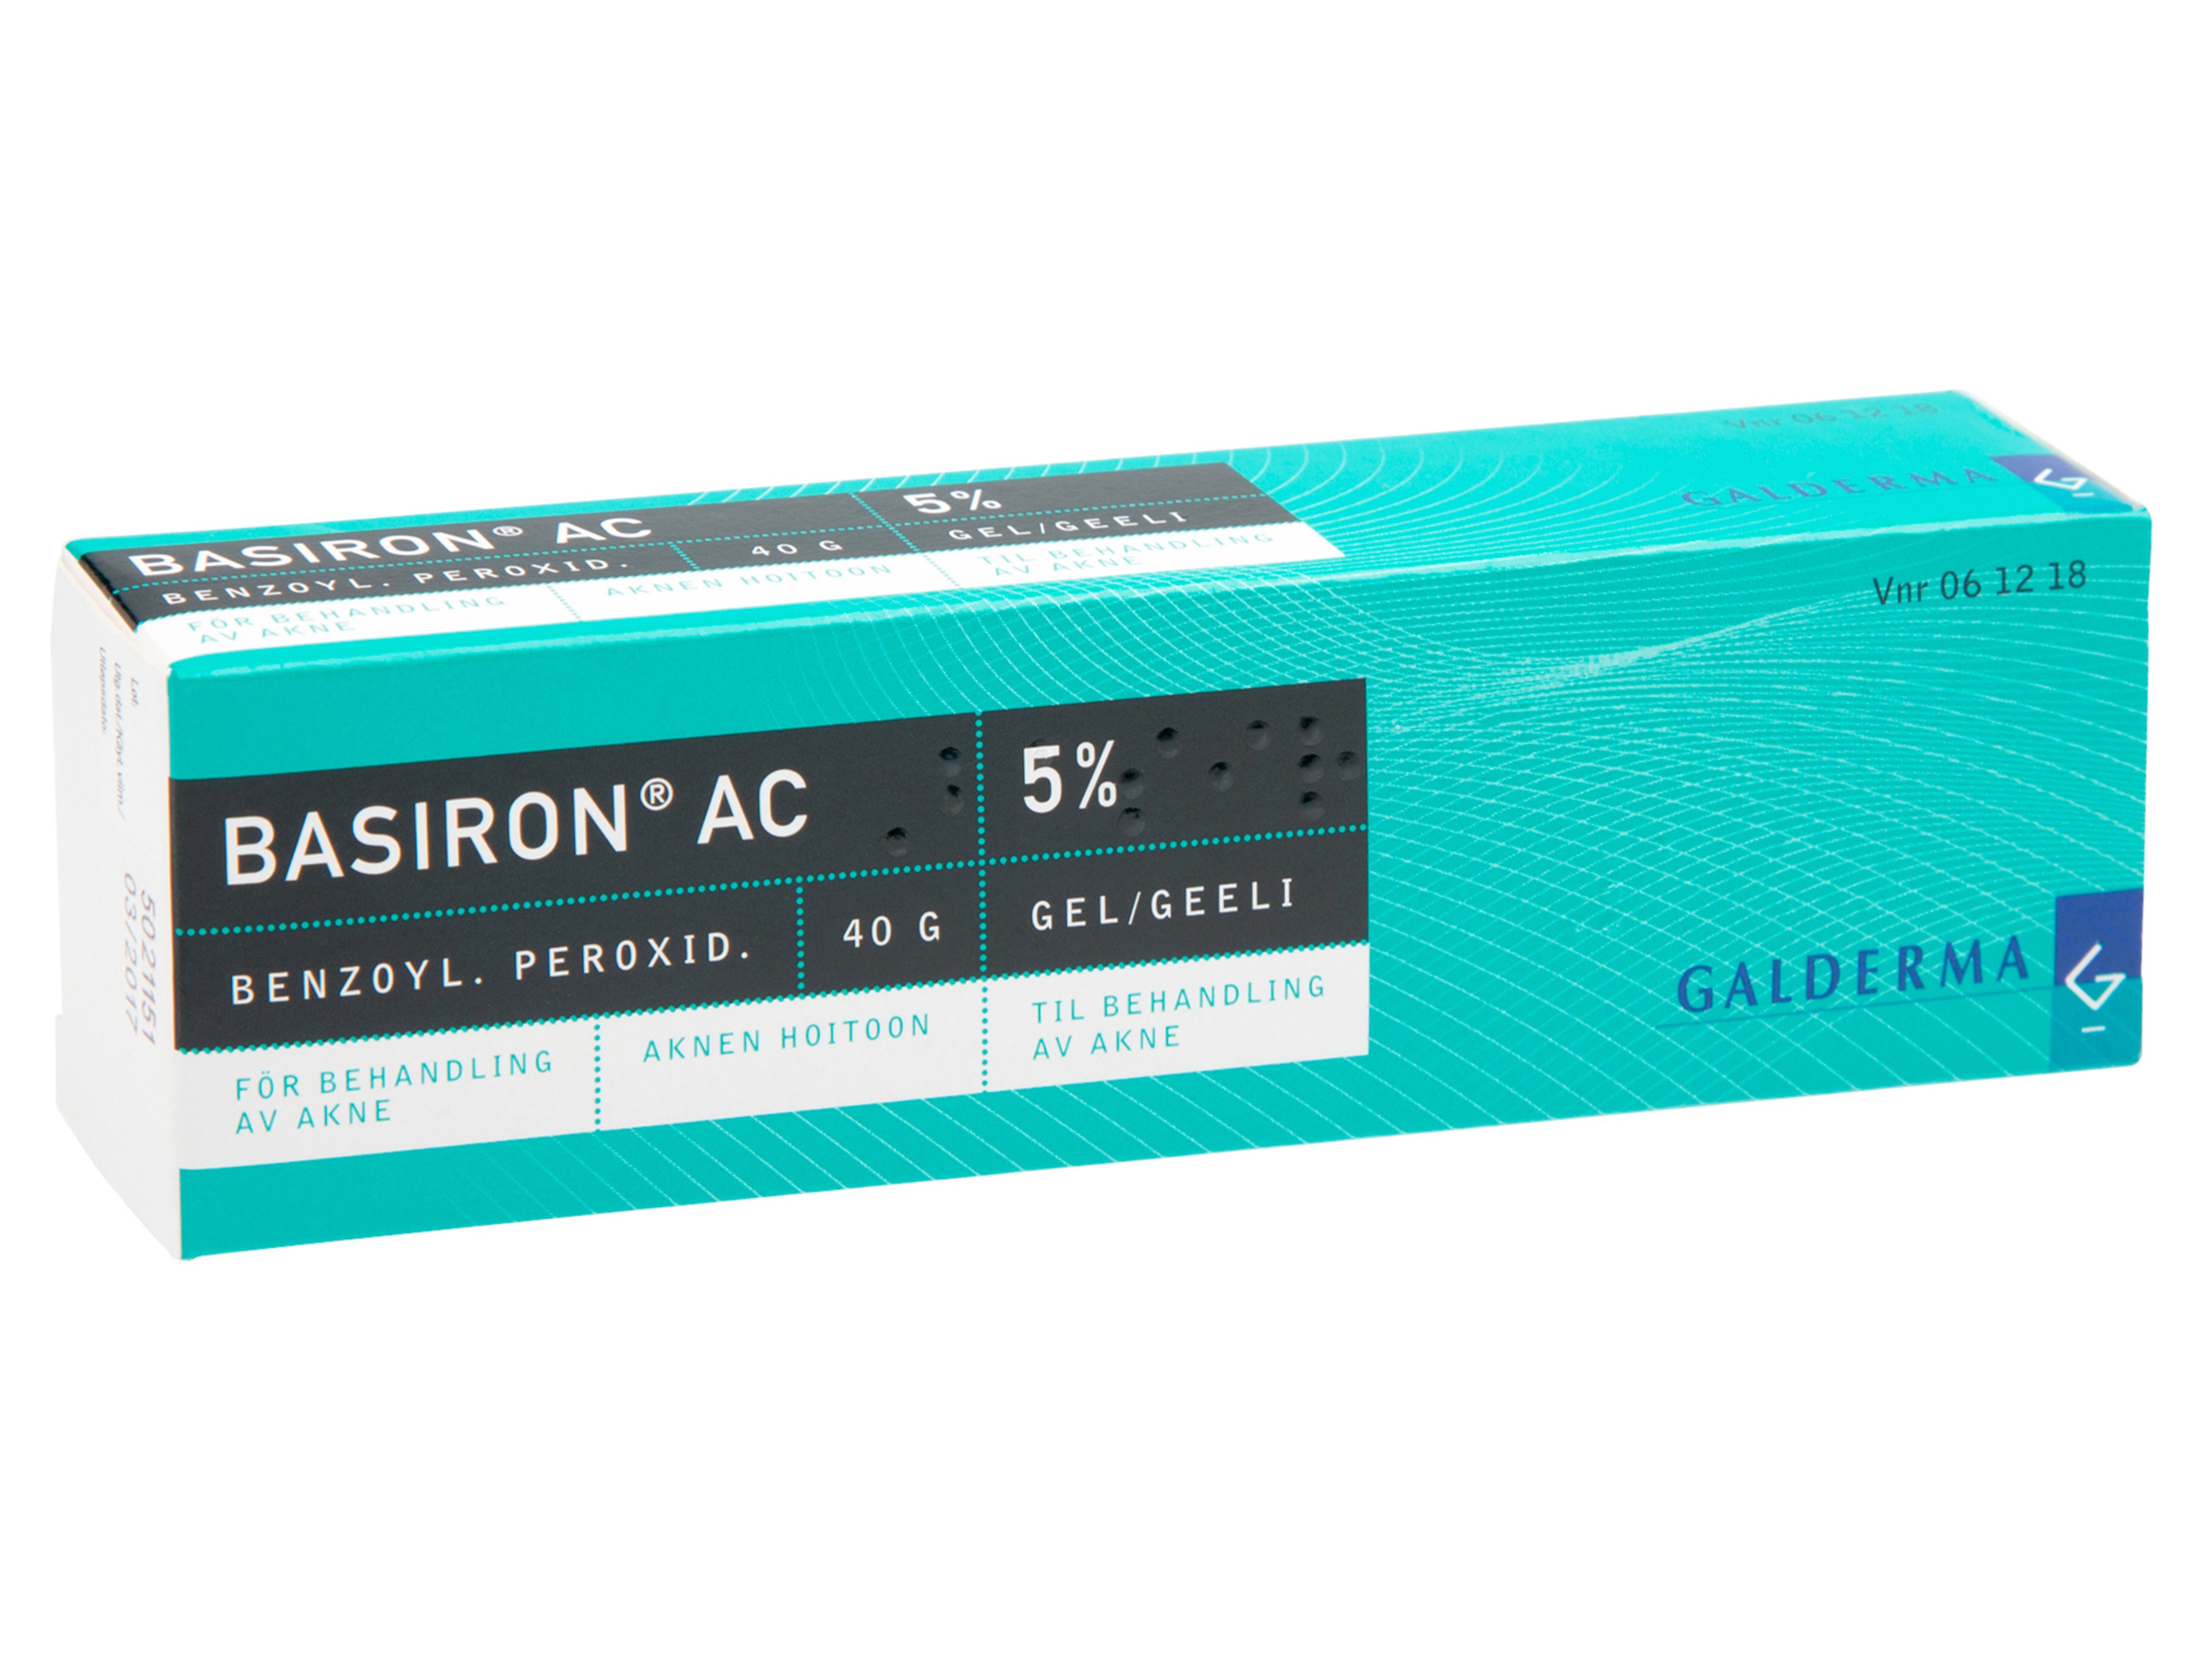 Basiron AC gel 5%, 40 g.